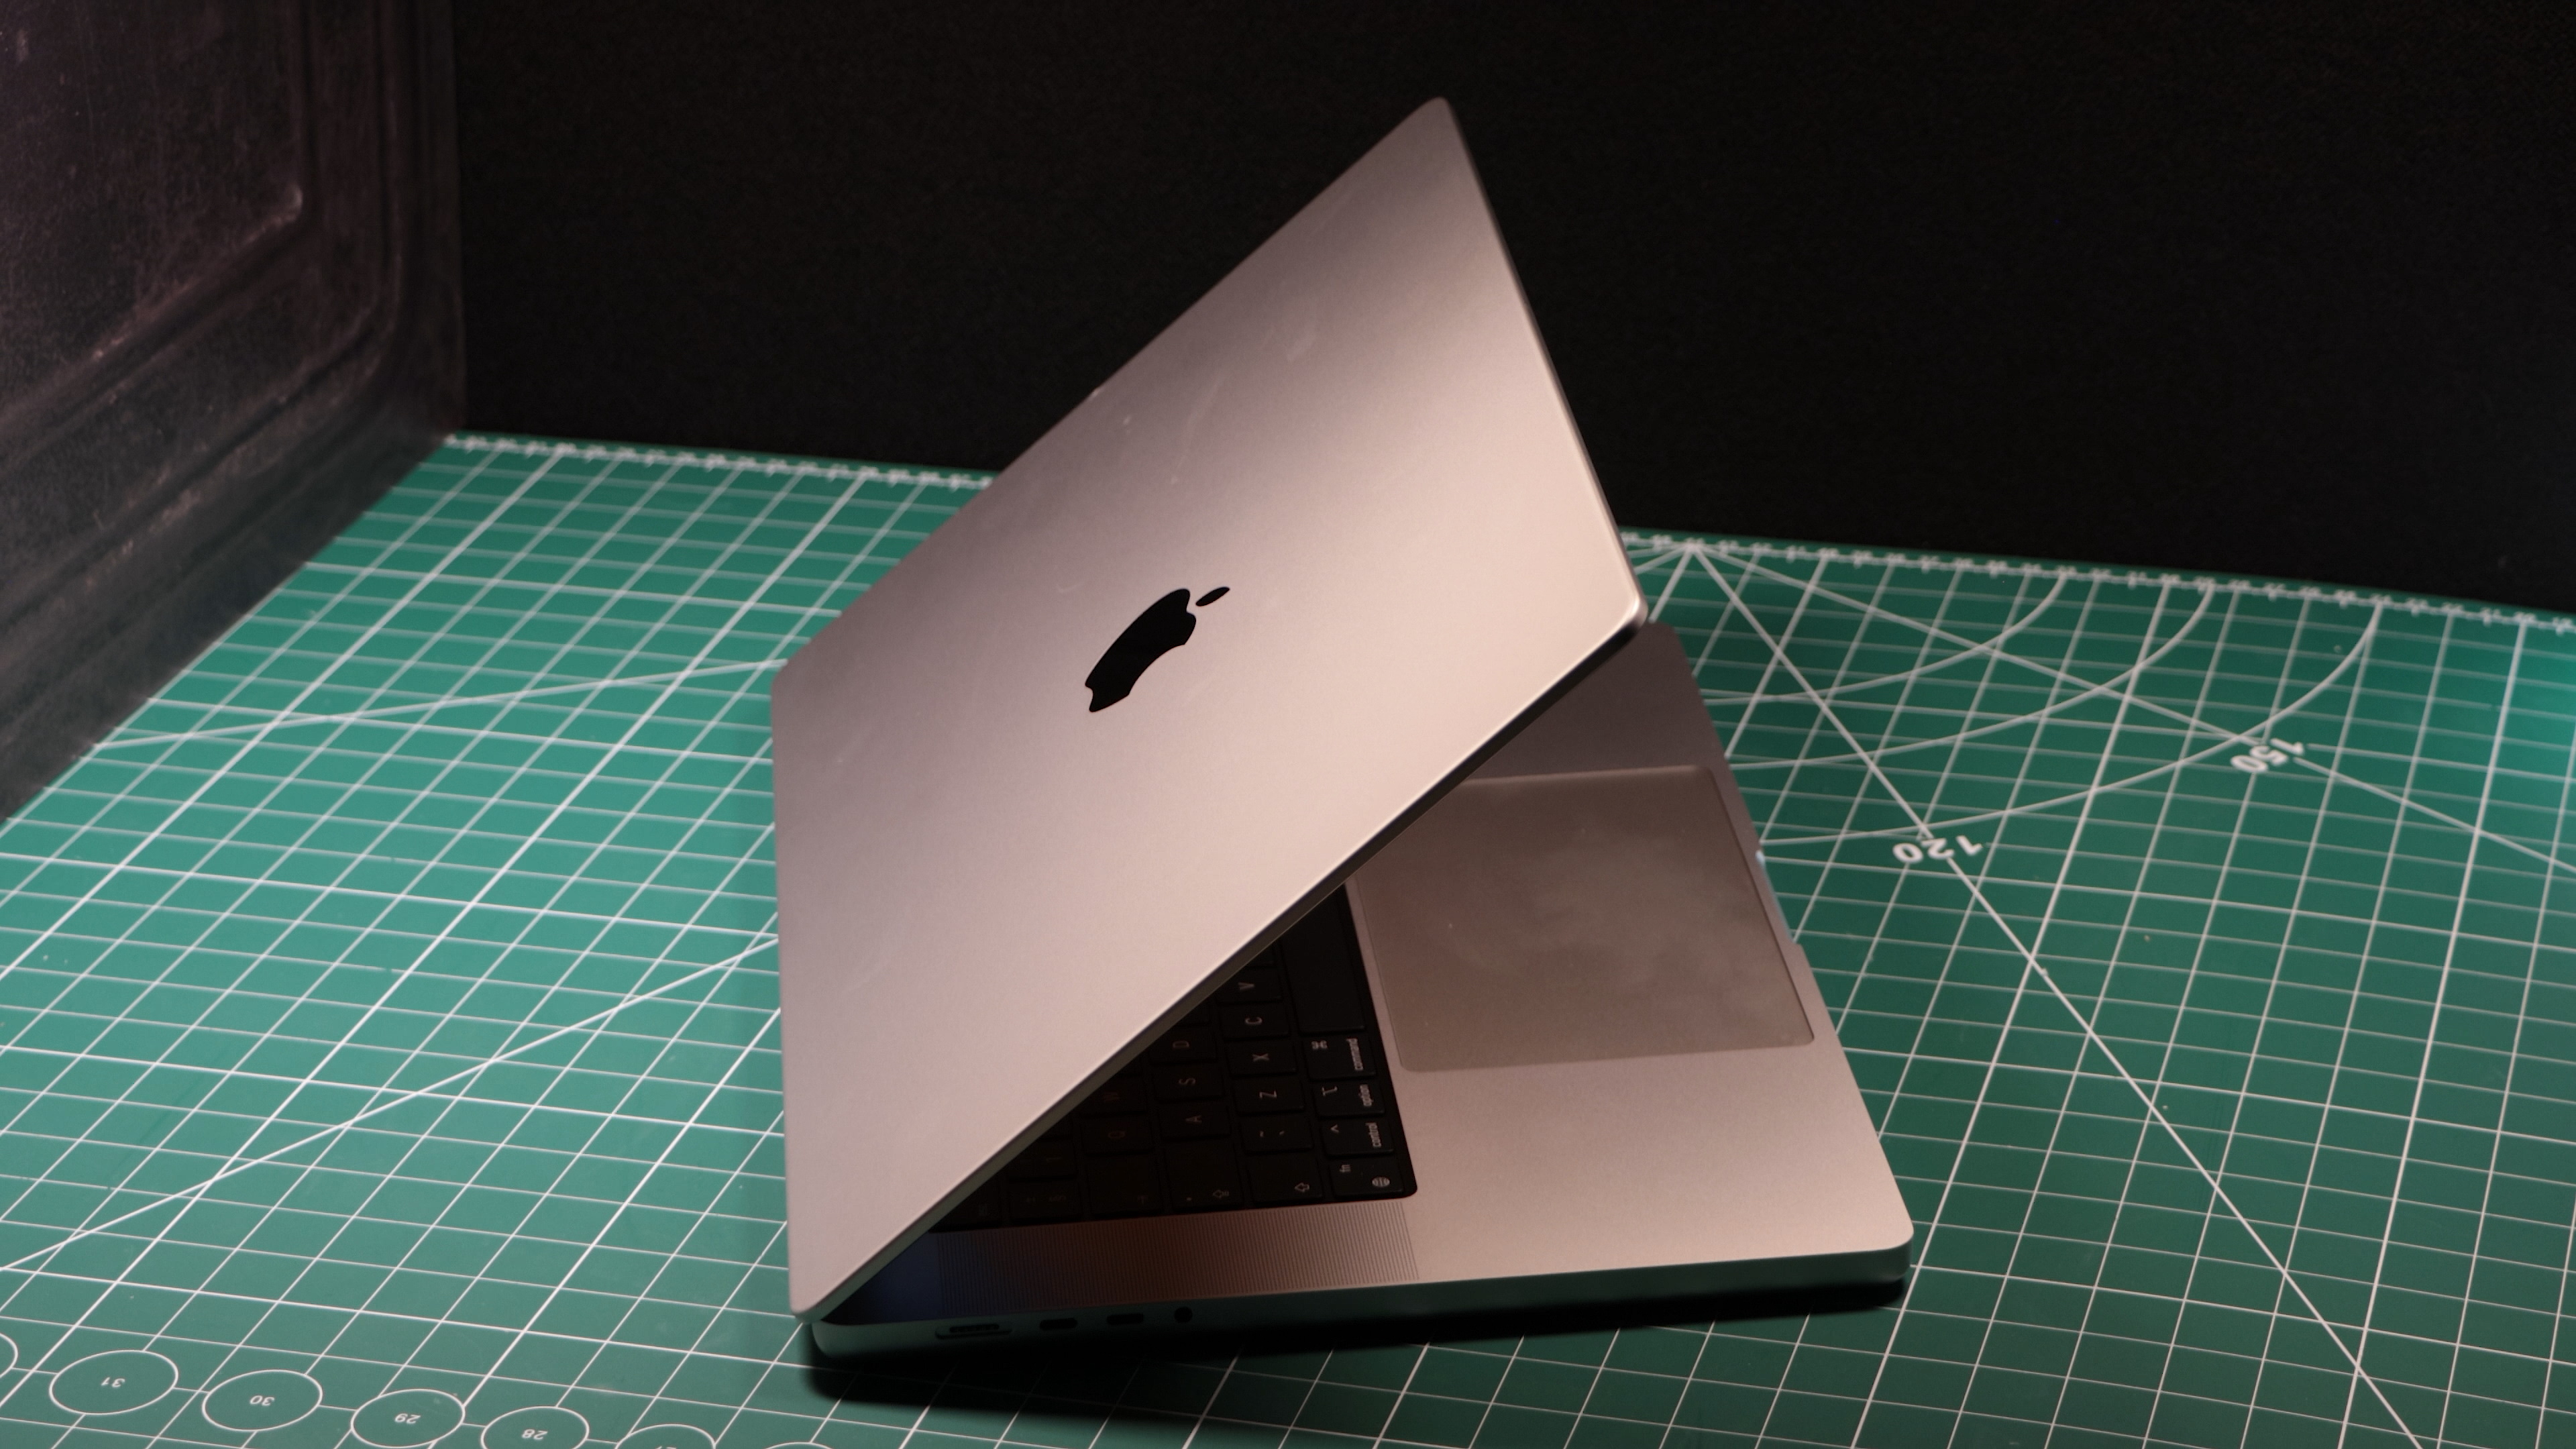 MacBook Pro 16-inch (2023) in use in a studio